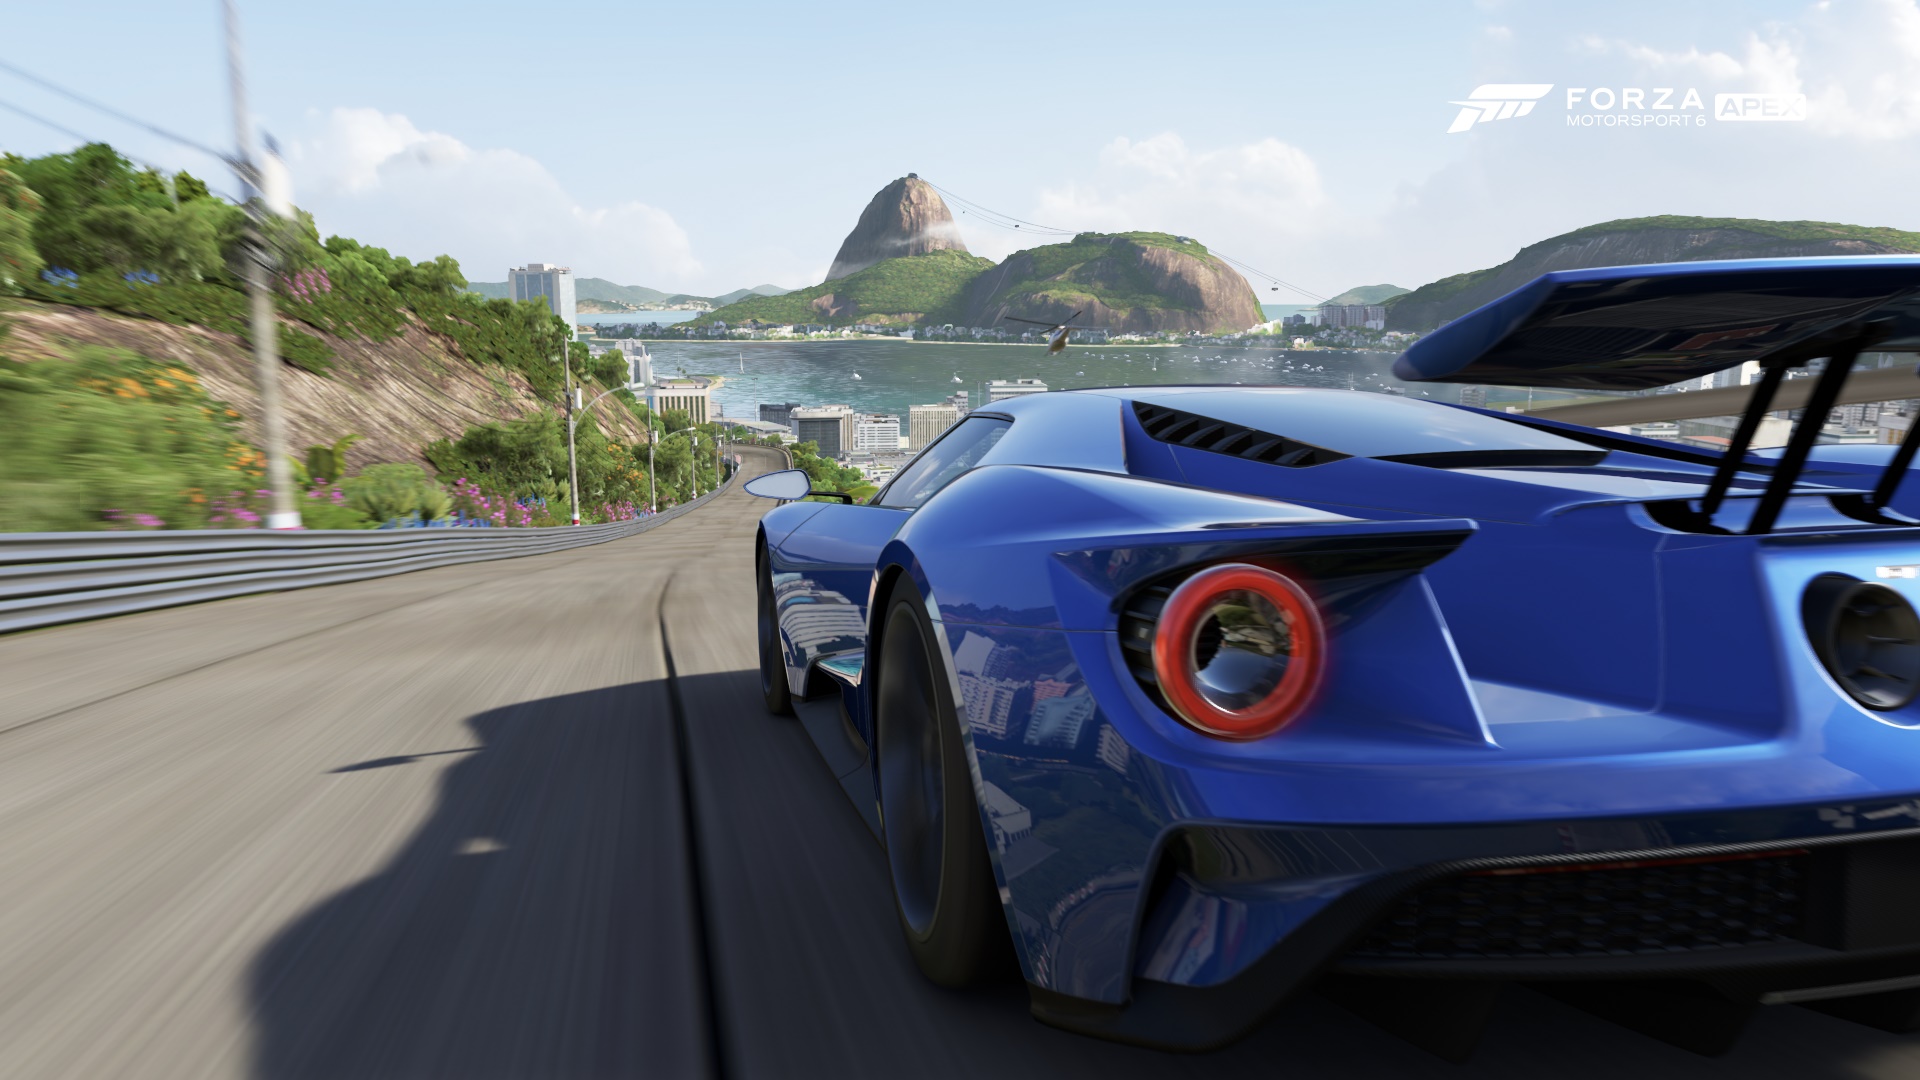 Forza Motorsport 6 – New Rio Track